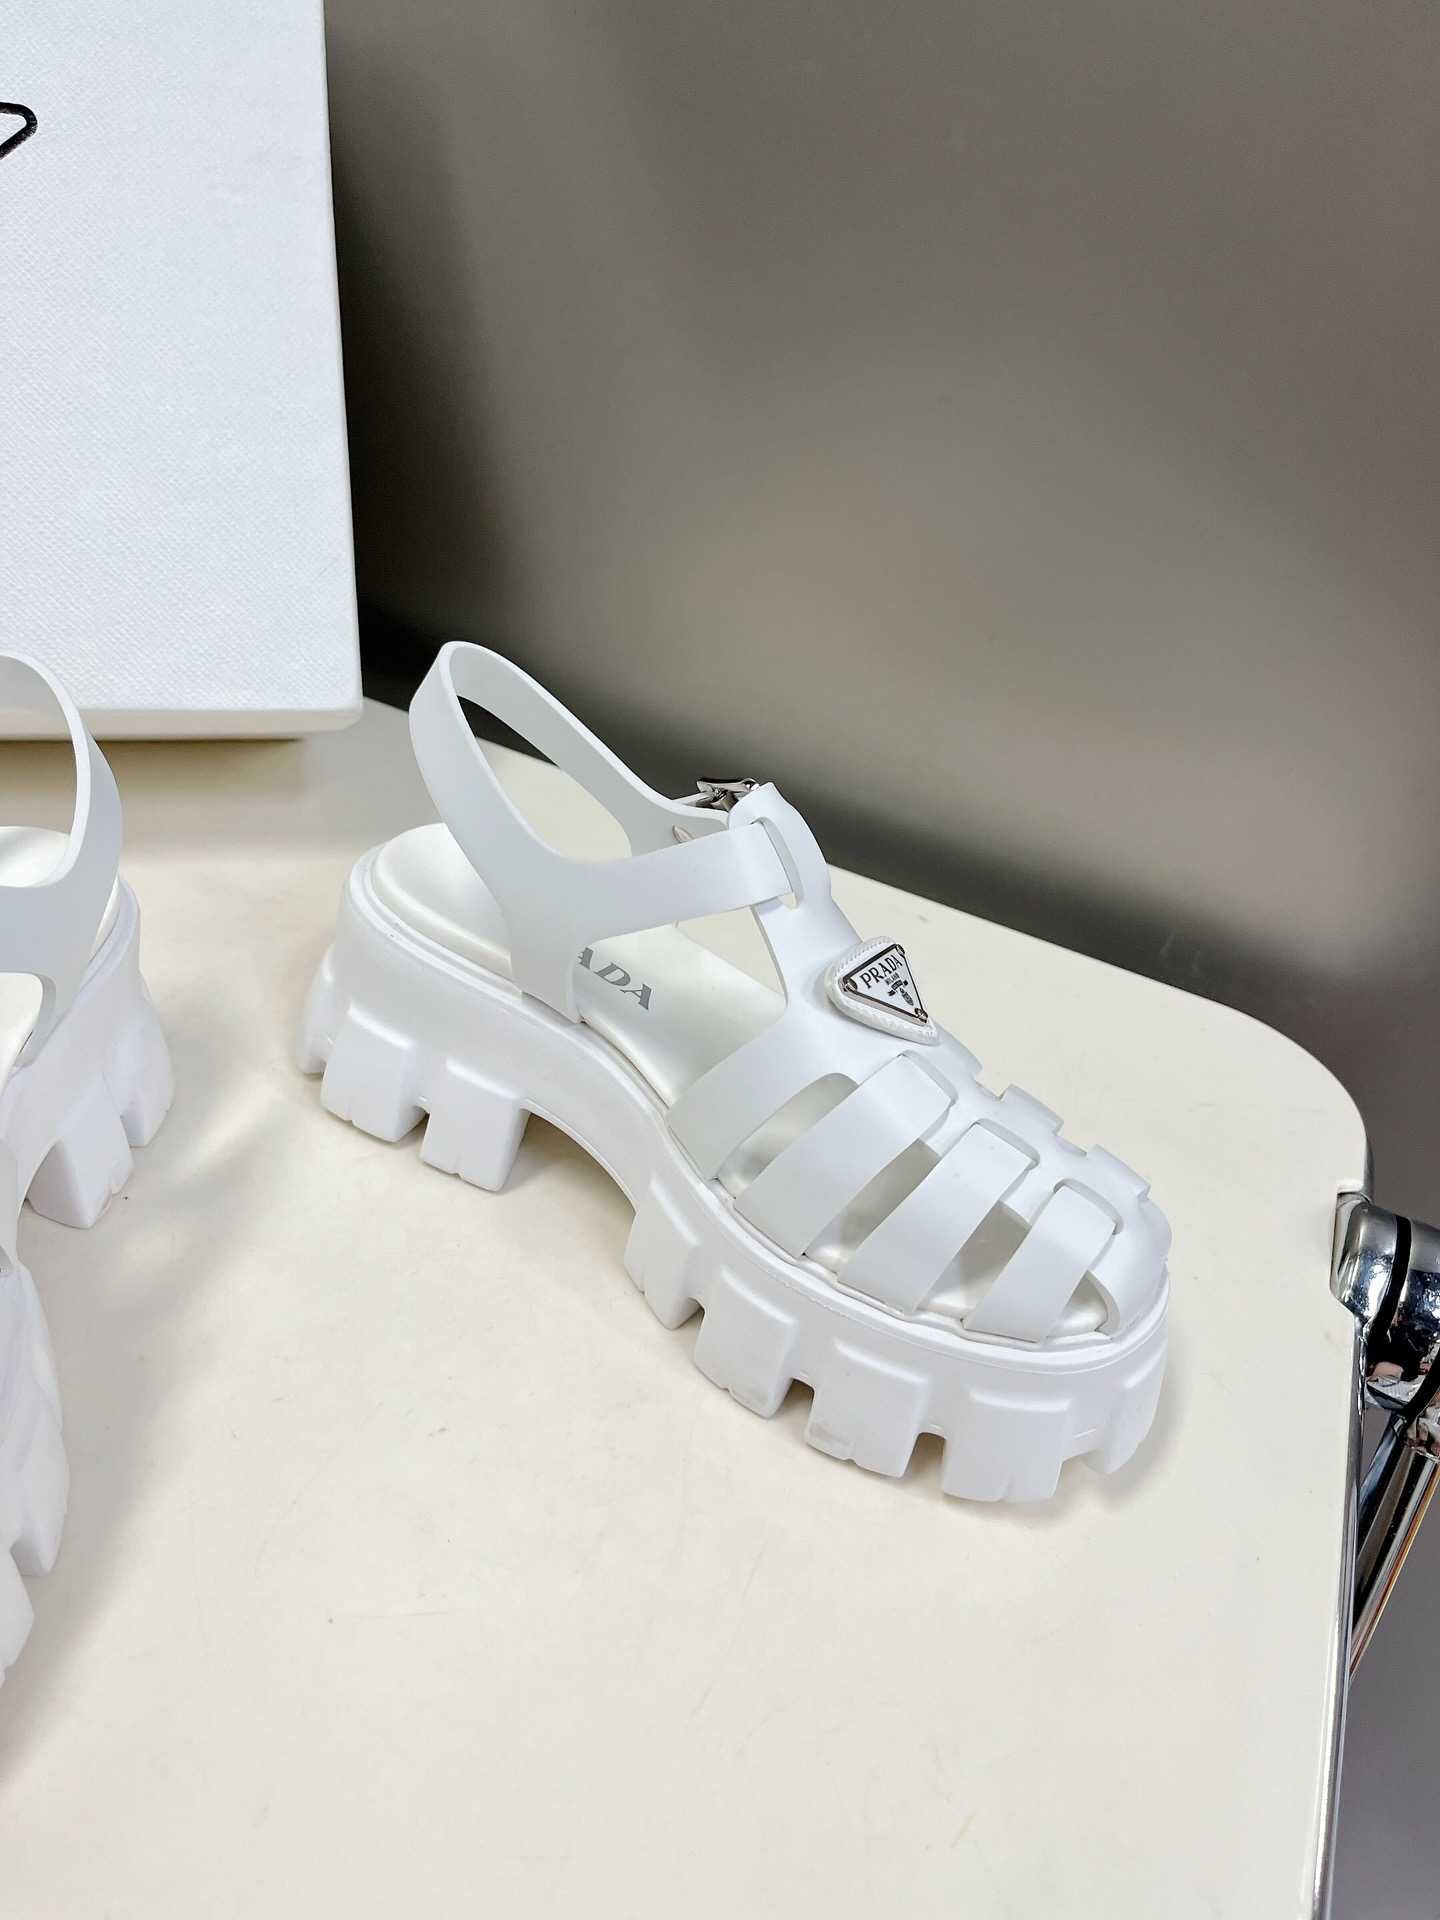 Sandale Prada Monolith alb, marimi 35-40, Premium